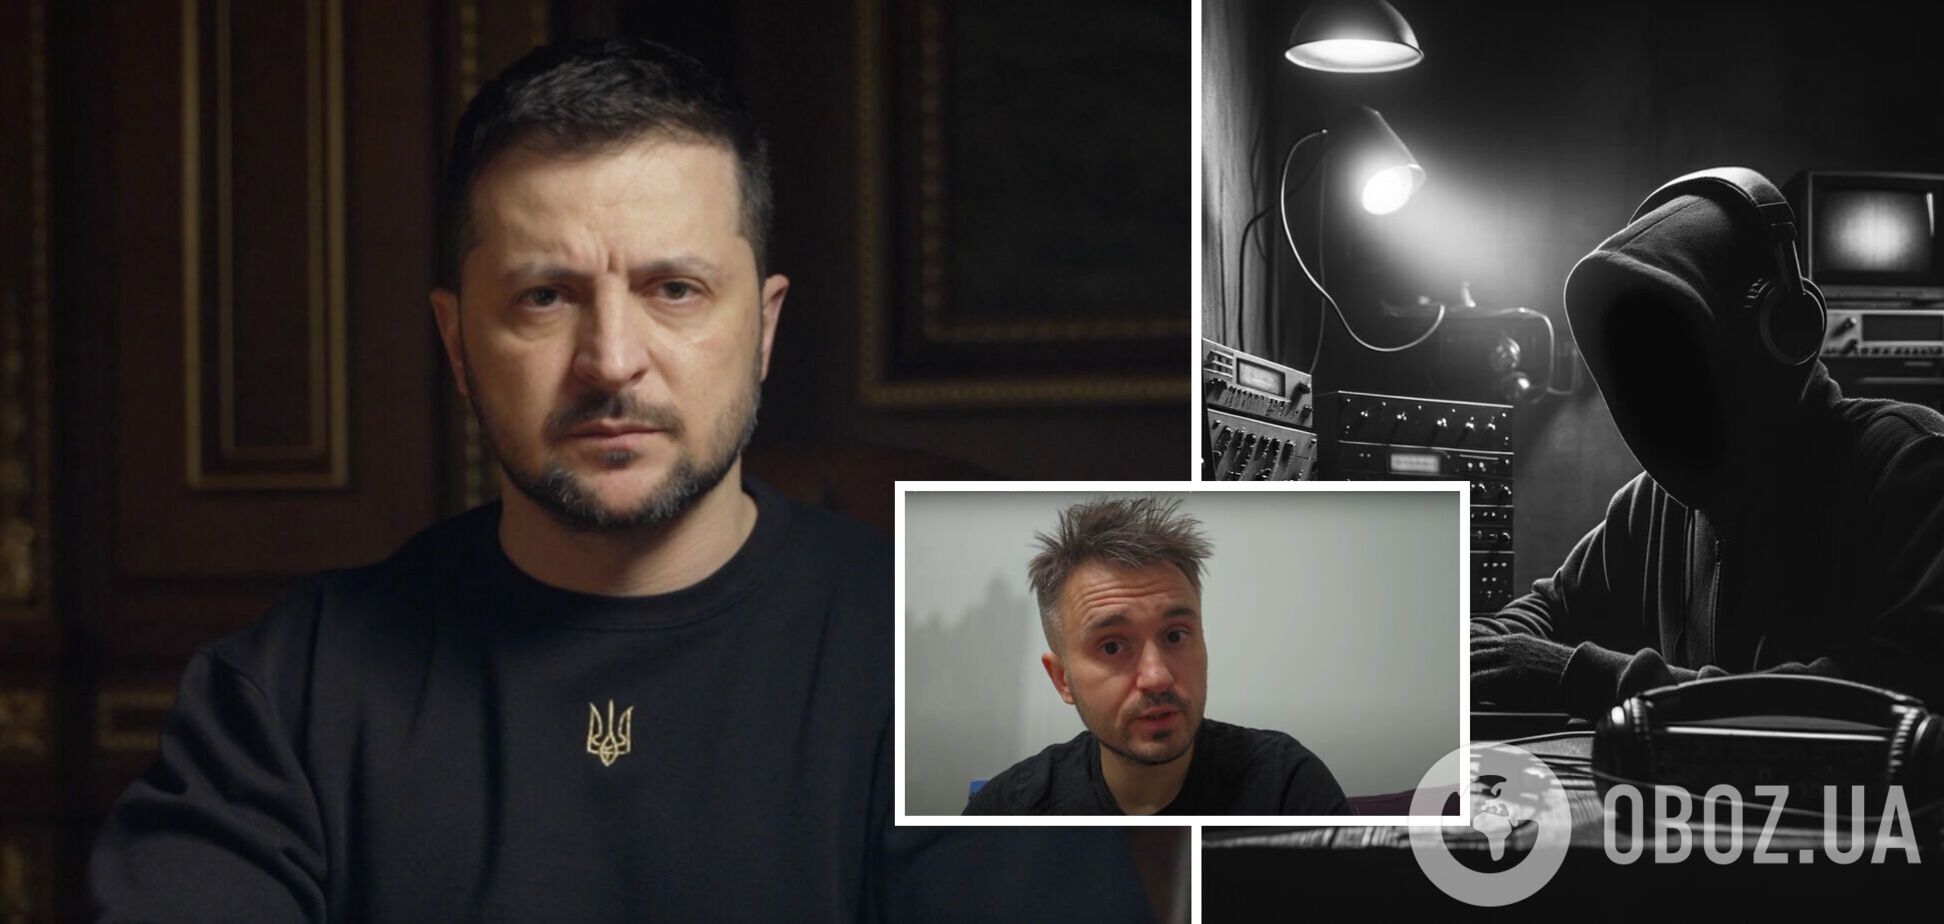 'Любое давление на журналистов недопустимо': Зеленский отреагировал на скандал с Bihus.info